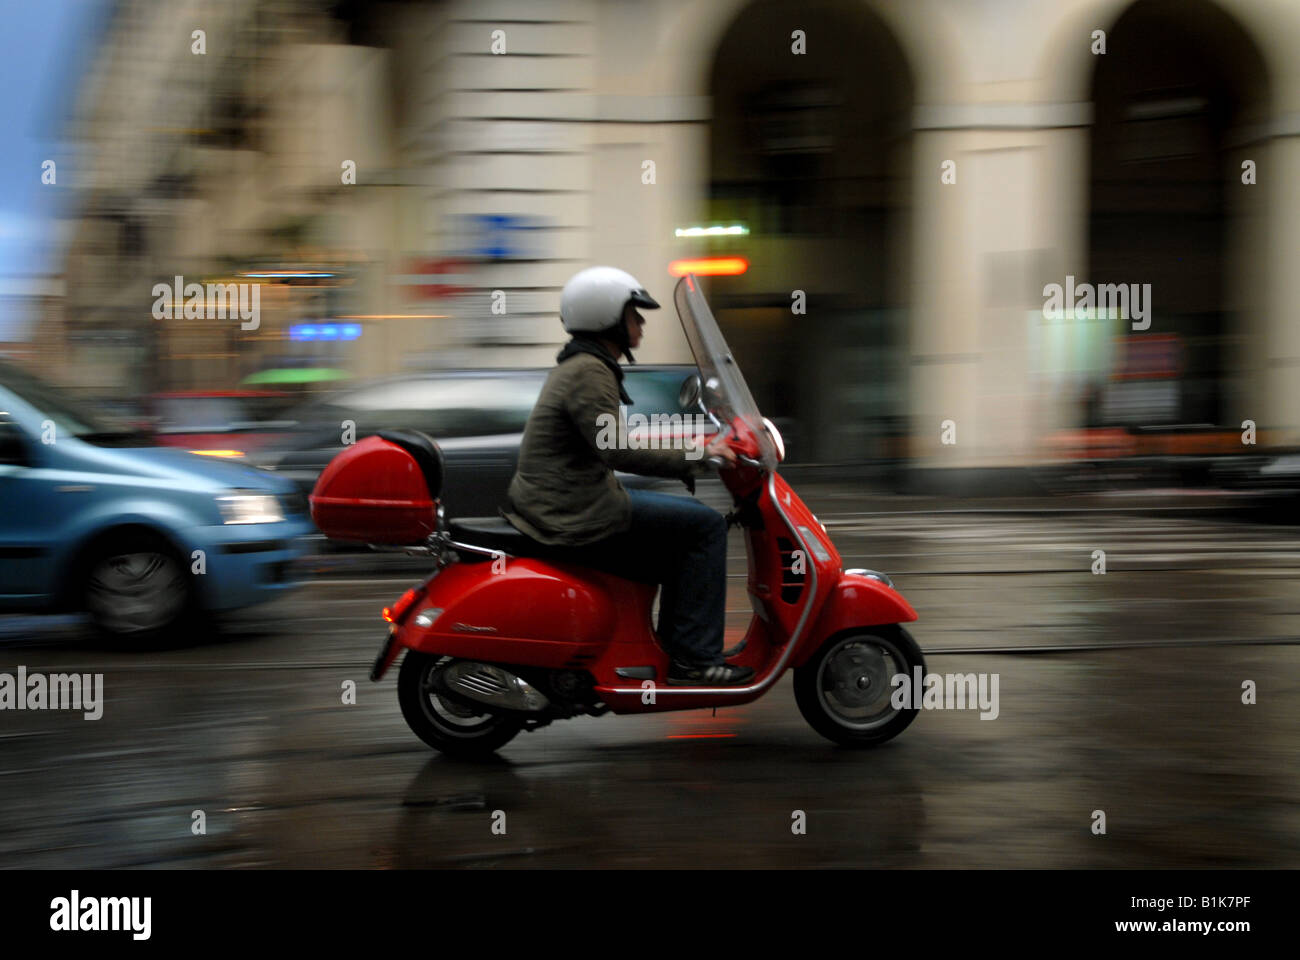 A moped rider -Fotos und -Bildmaterial in hoher Auflösung - Seite 3 - Alamy